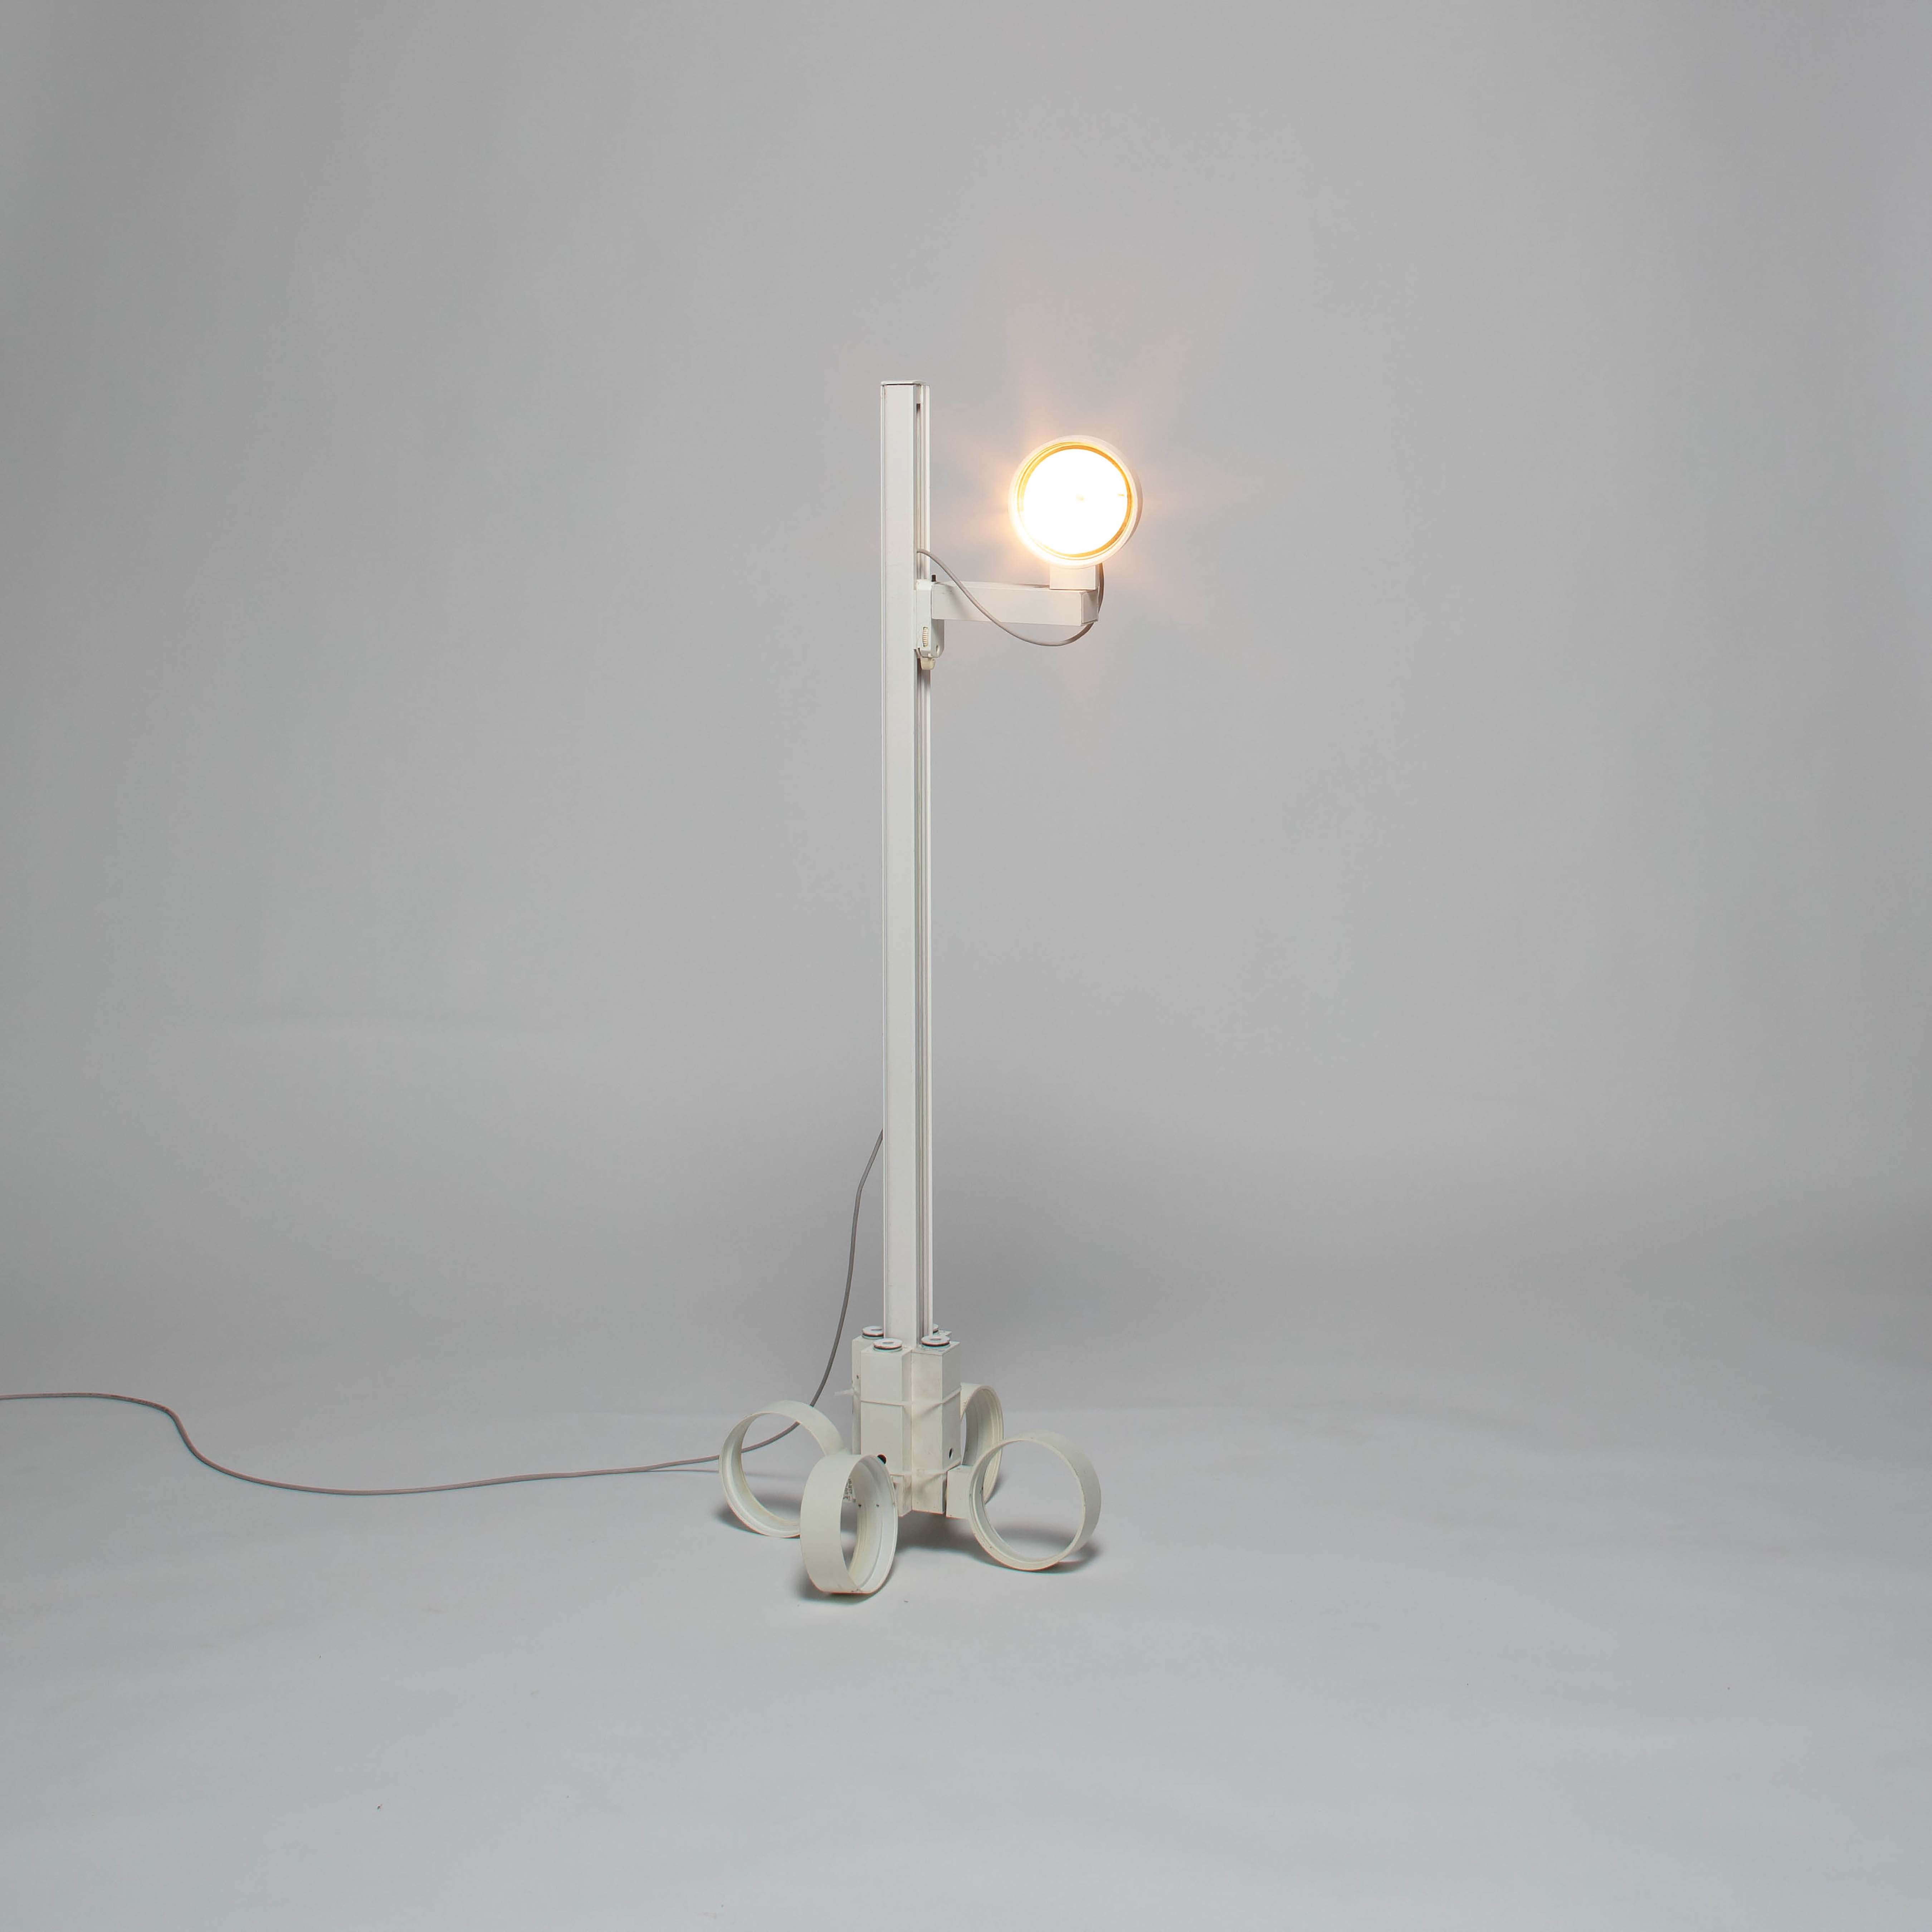 <BODY>Anton Defant und Benjamin Nagy, <em>Reading Lamp</em>, 2021<br />© Werkstätte für digitale Fotografie, Universität für angewandte Kunst Wien<br /><br /></BODY>